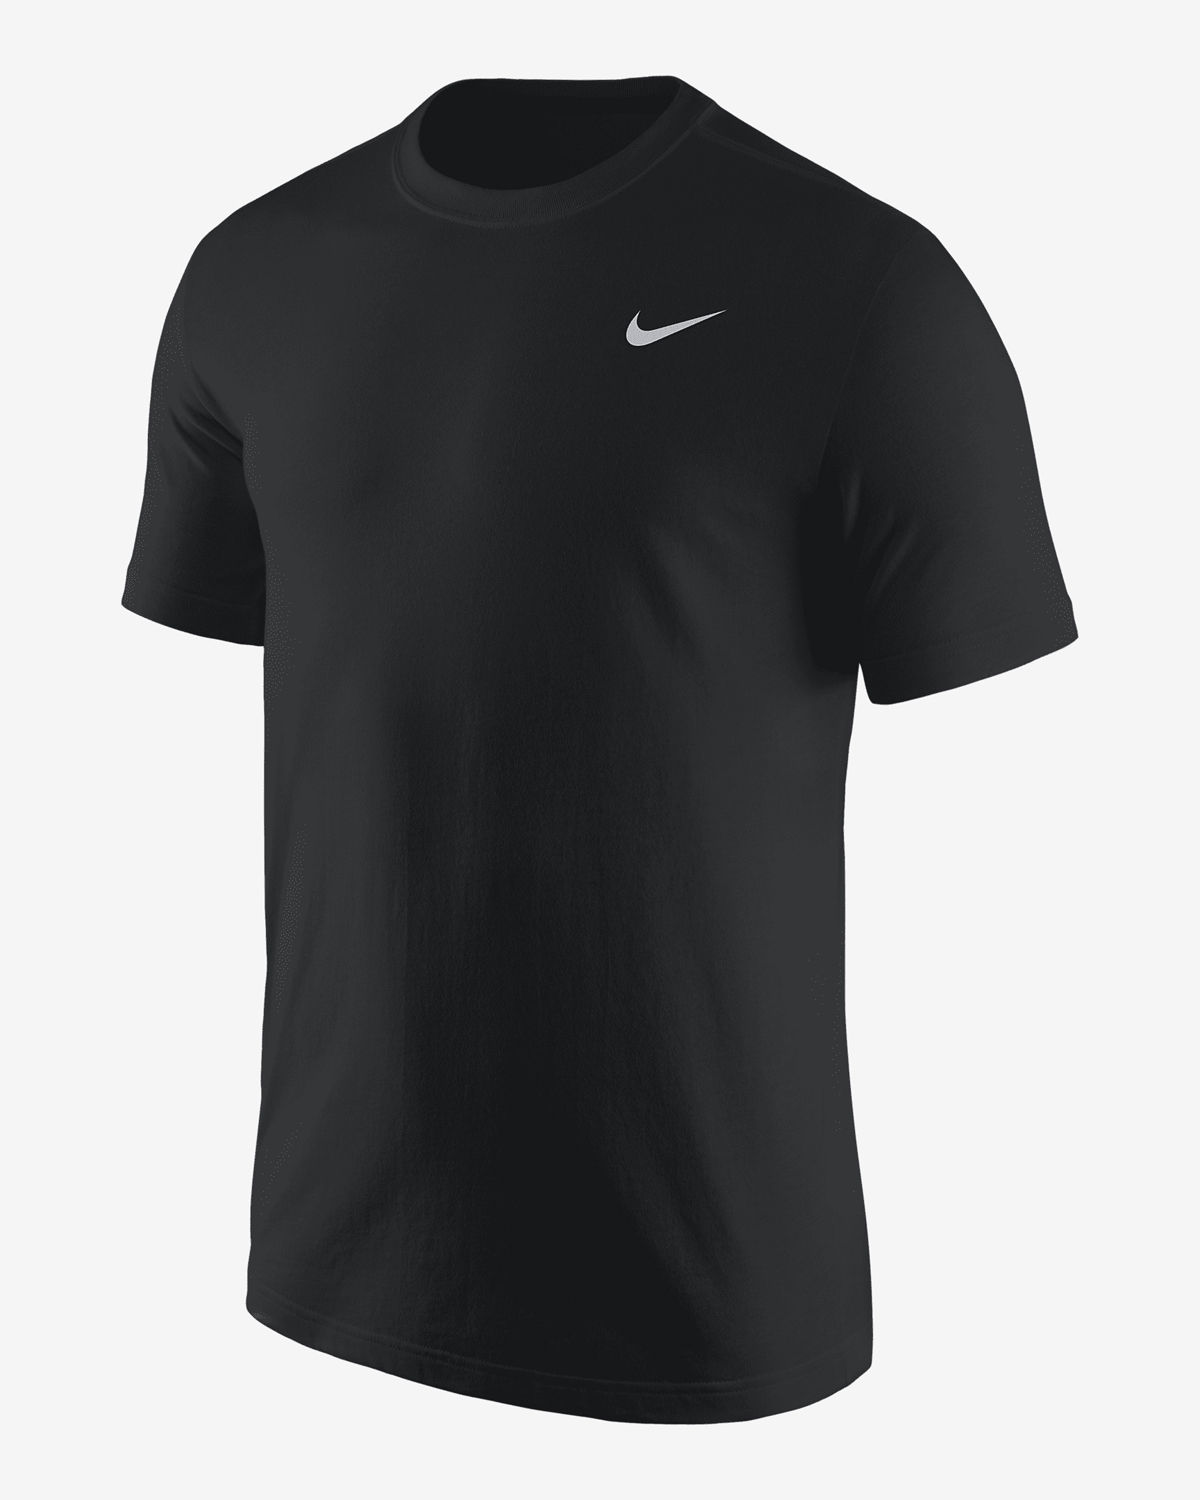 Nike-LeBron-FaZe-Clan-T-Shirt-1